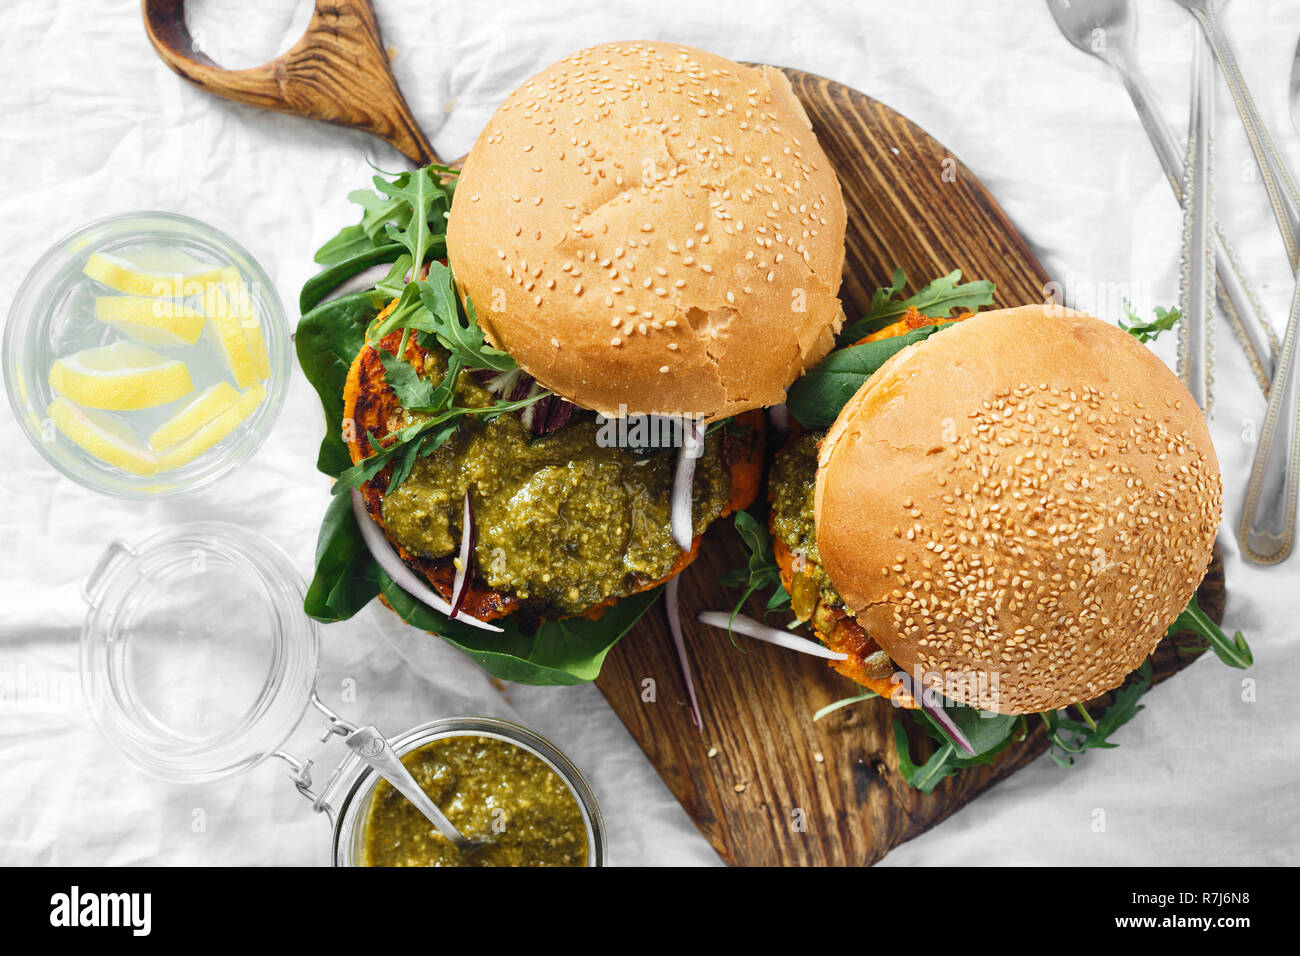 Burger végétarien fait de l'escalope de citrouille, Épinards, roquette et sauce pesto servi sur une planche en bois Vue de dessus. Concept de l'alimentation végétarienne saine Banque D'Images